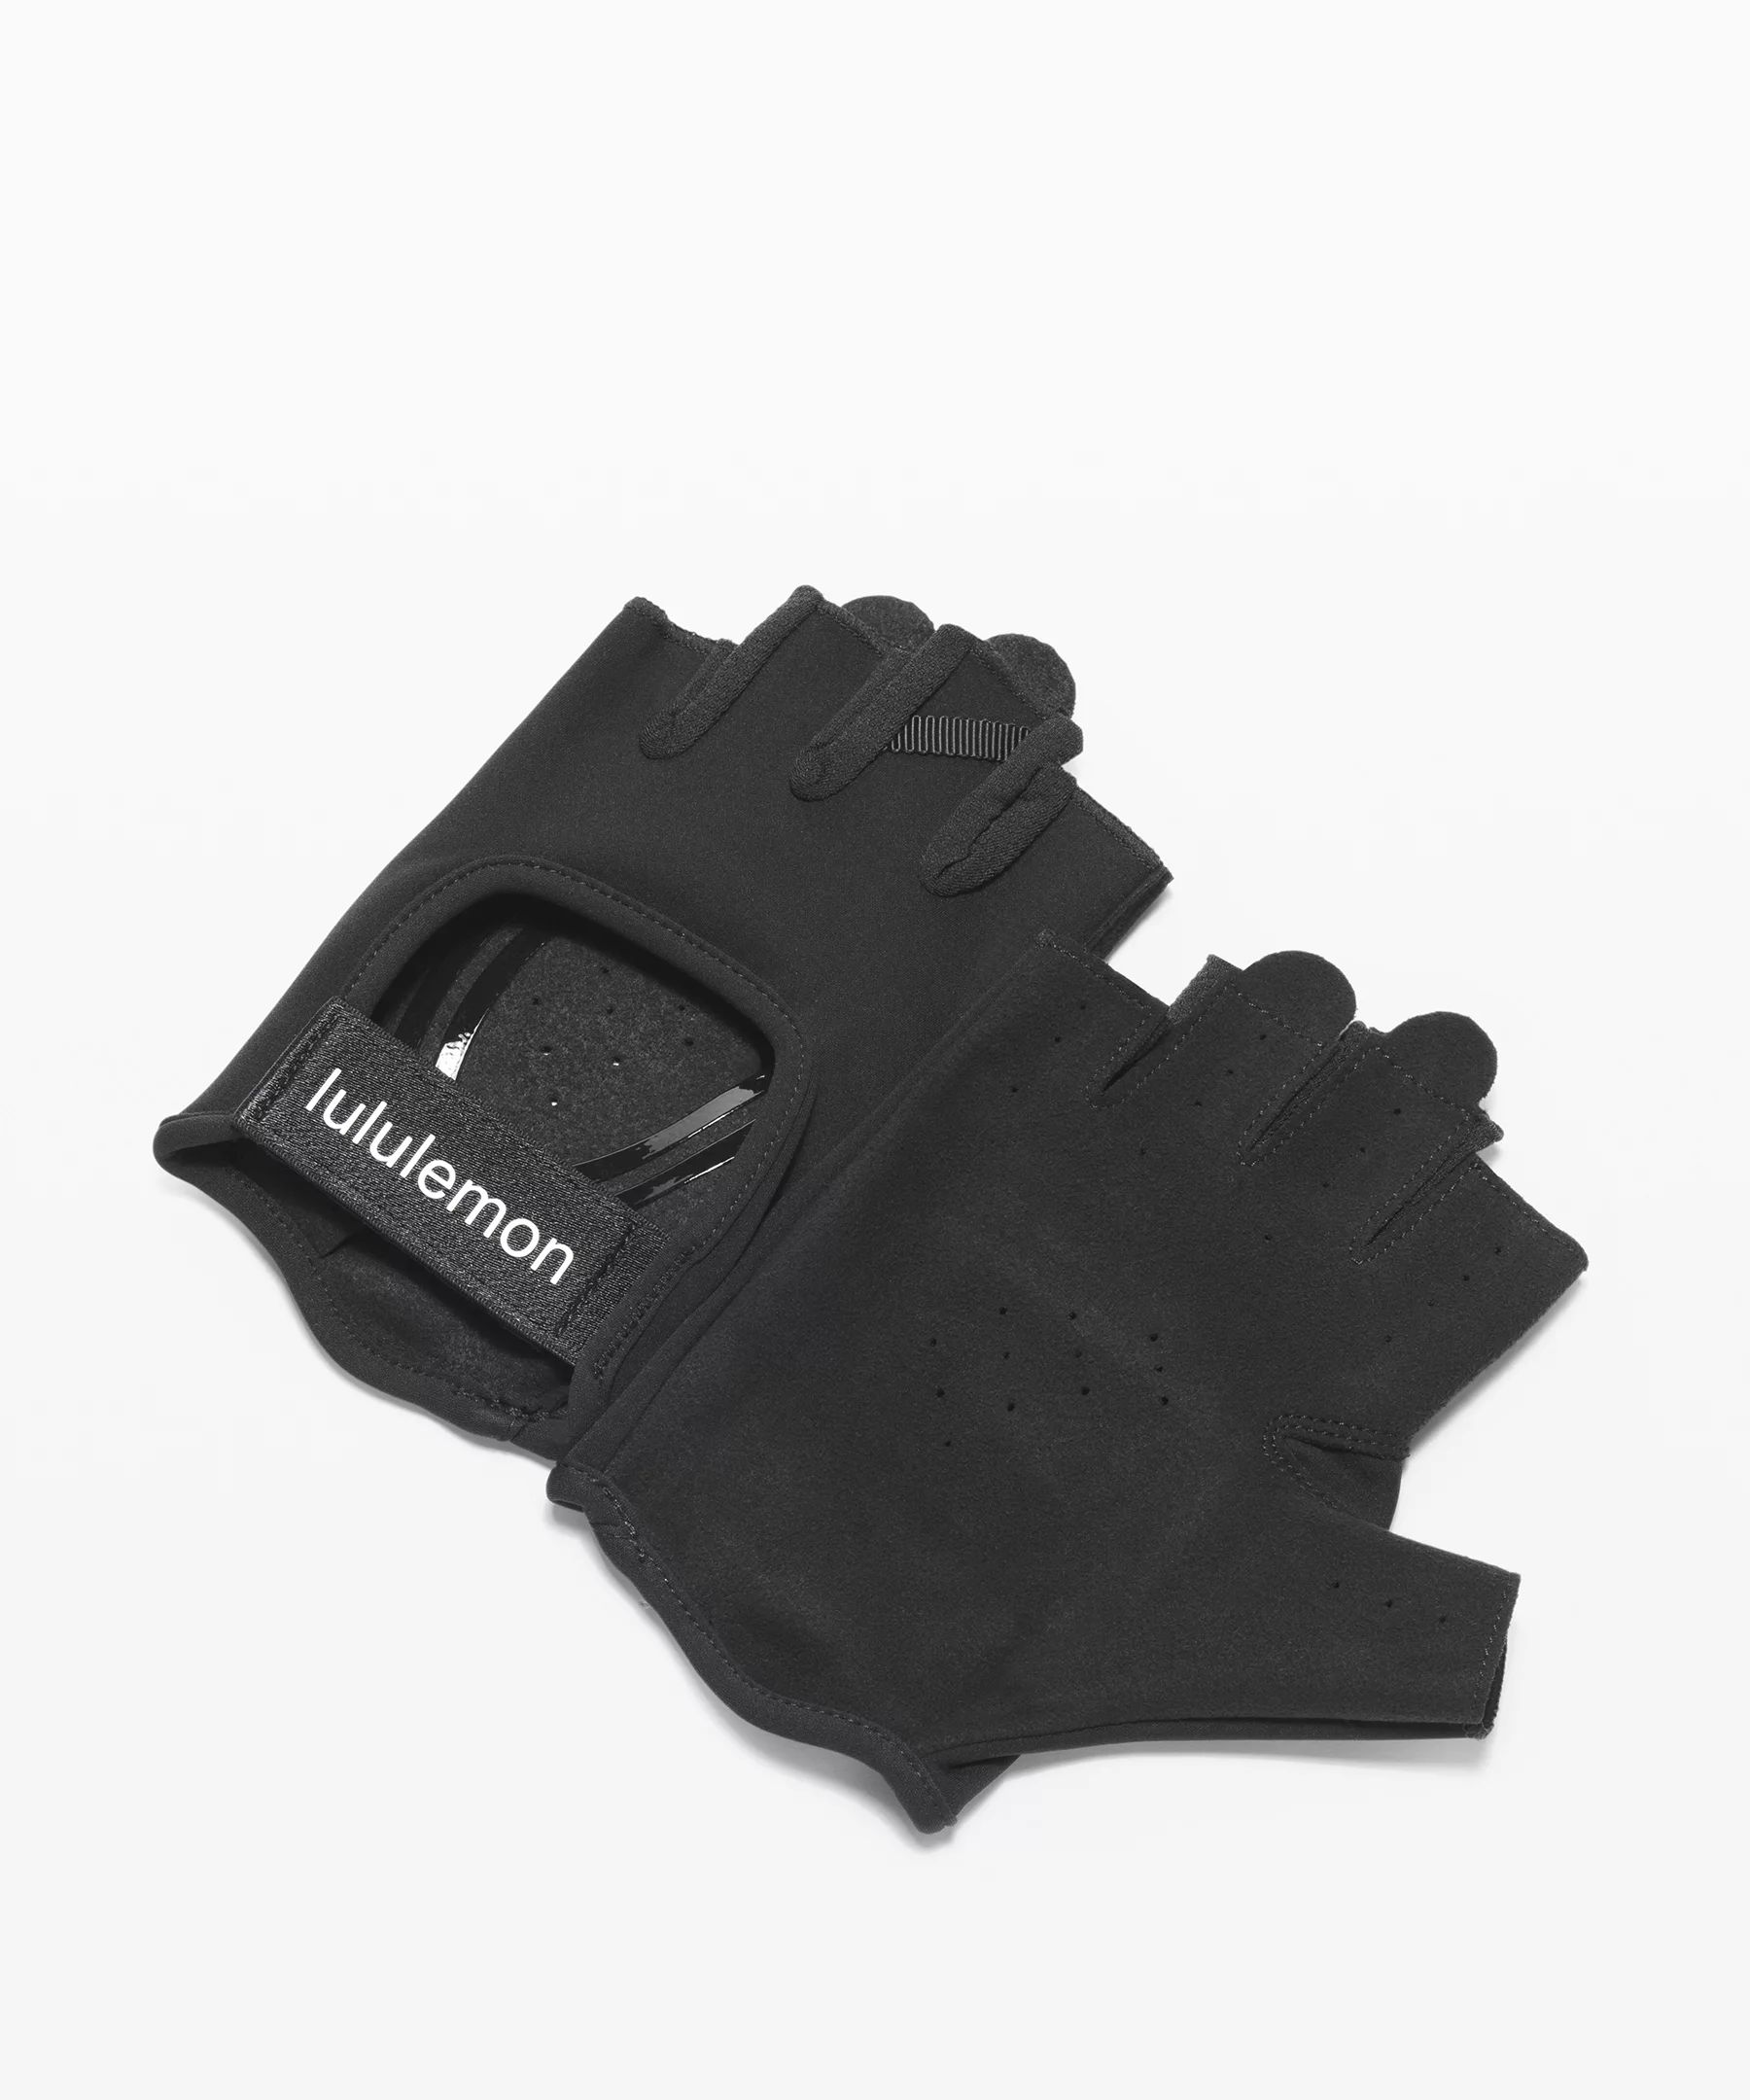 Uplift Training Gloves | Lululemon (US)